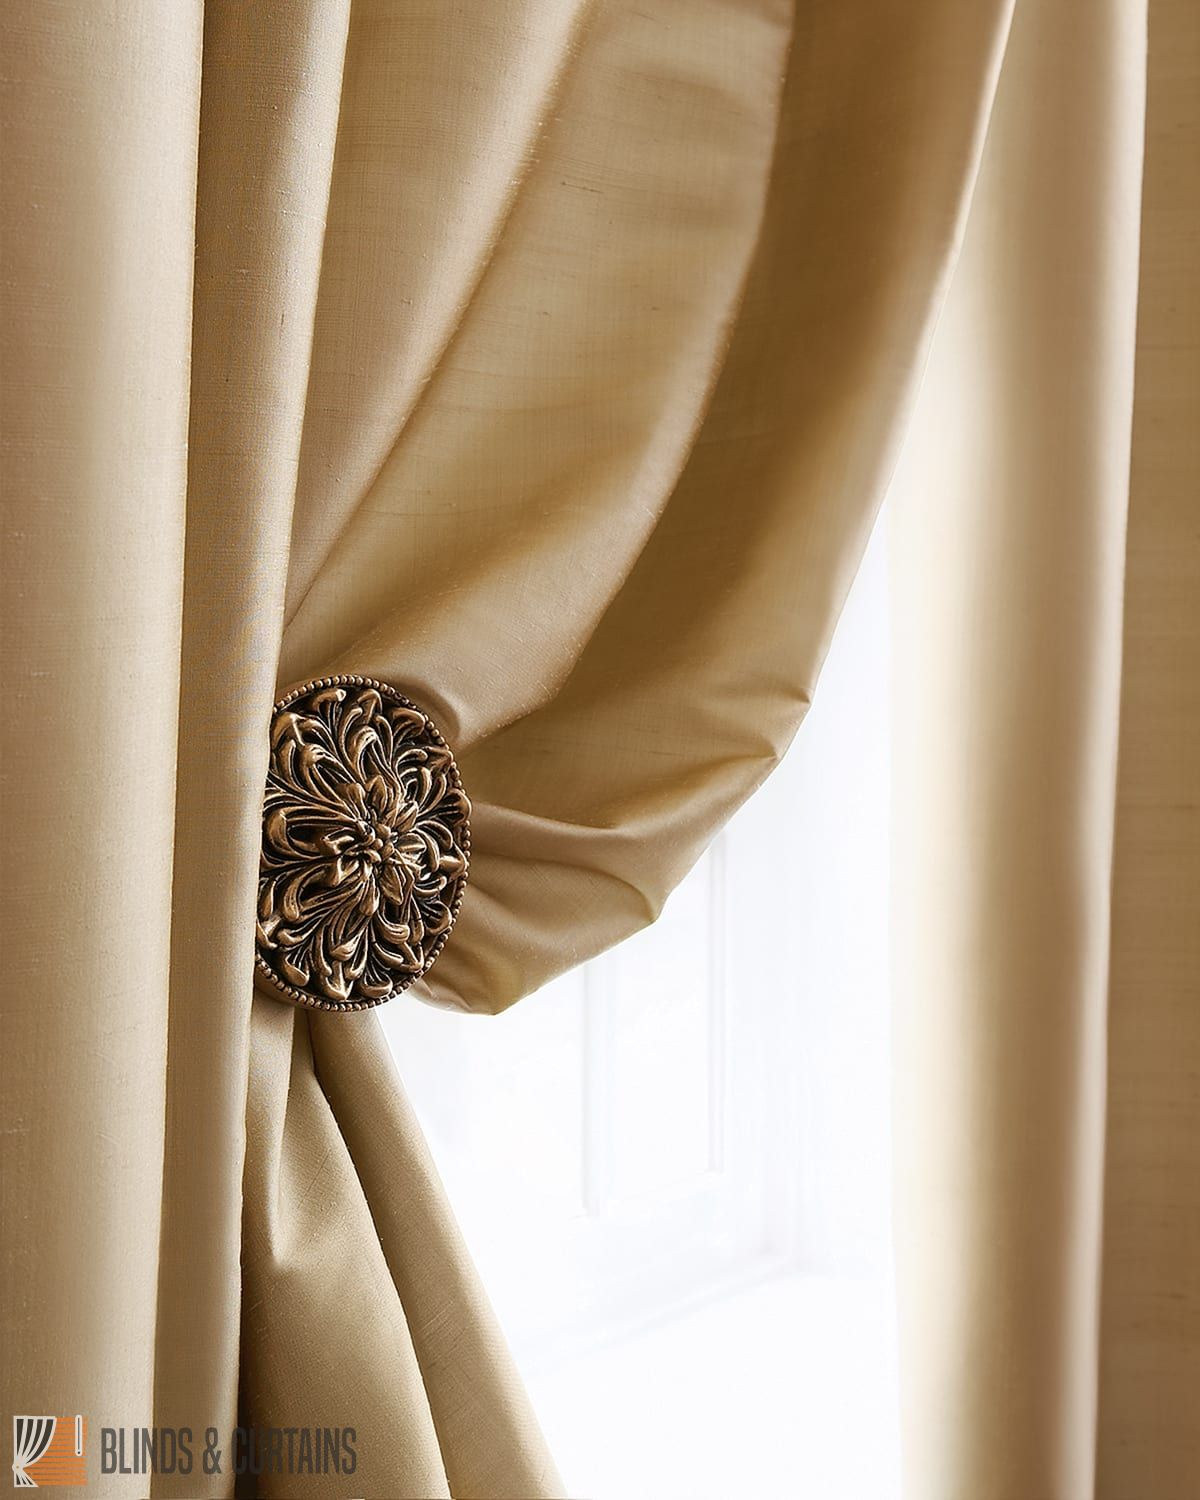 silk curtains